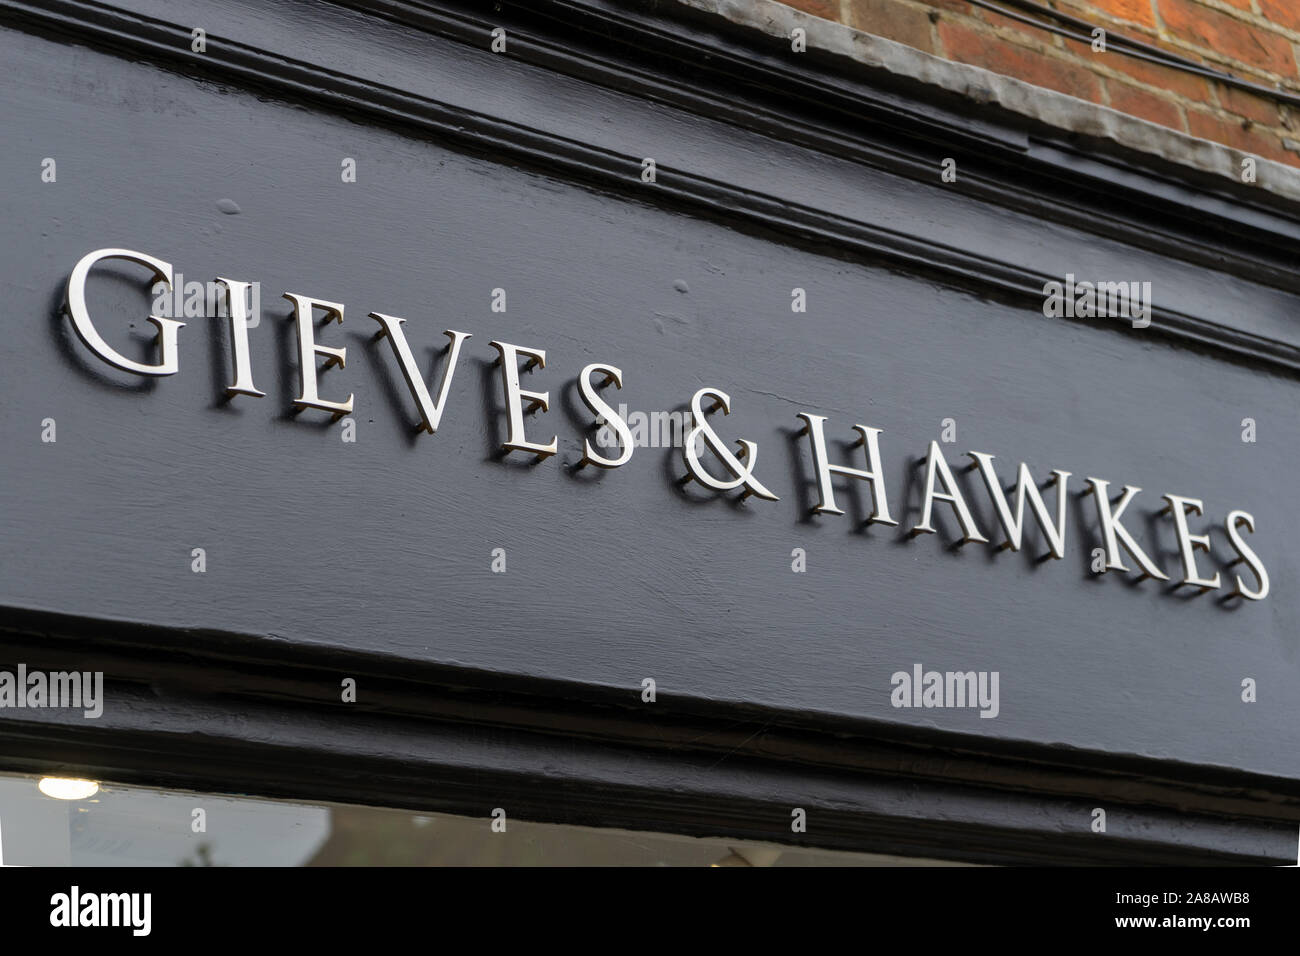 El signo anterior Gieves y Hawkes sastres Foto de stock